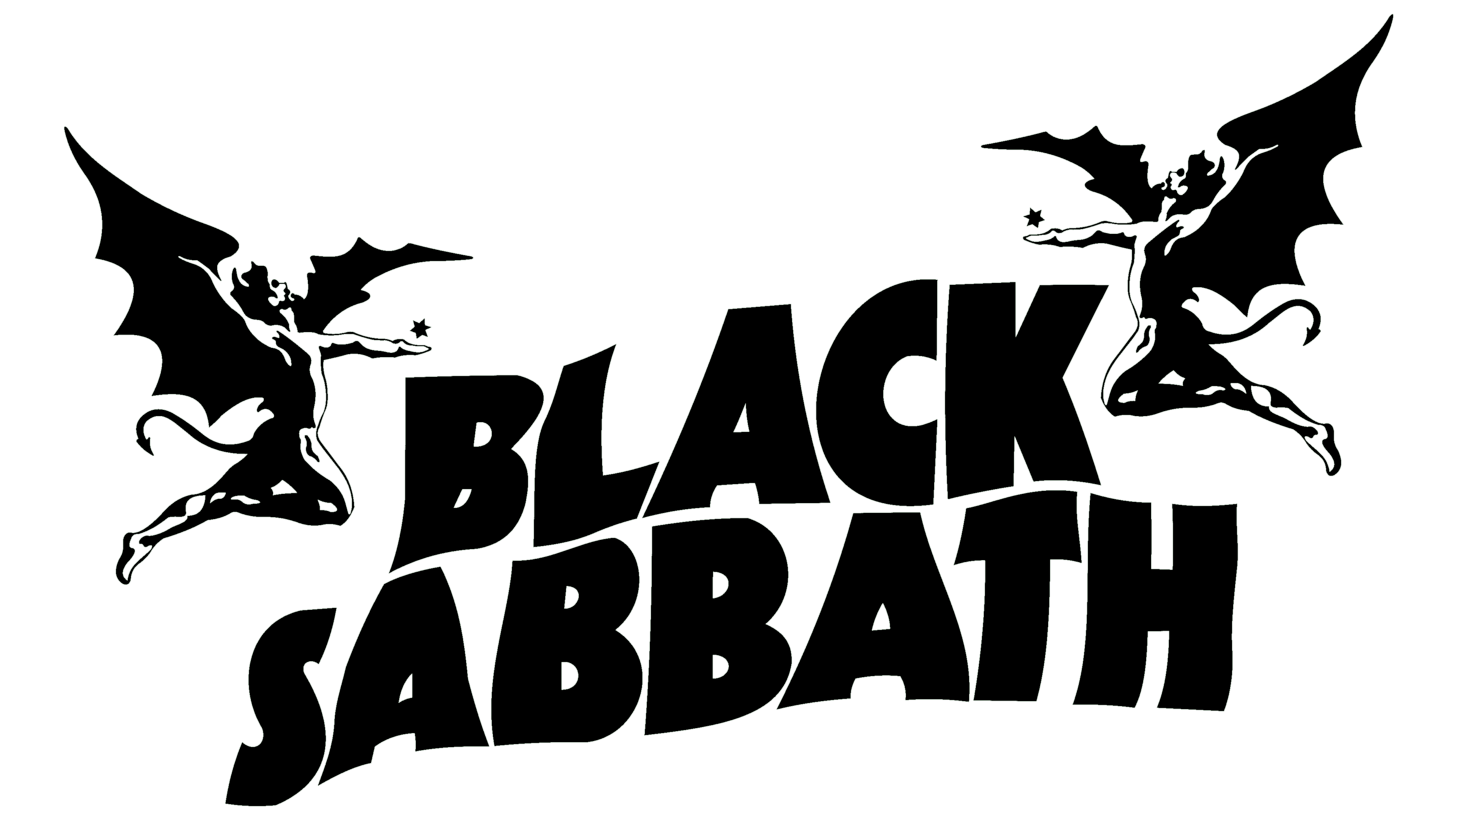 Black sabbath symbol